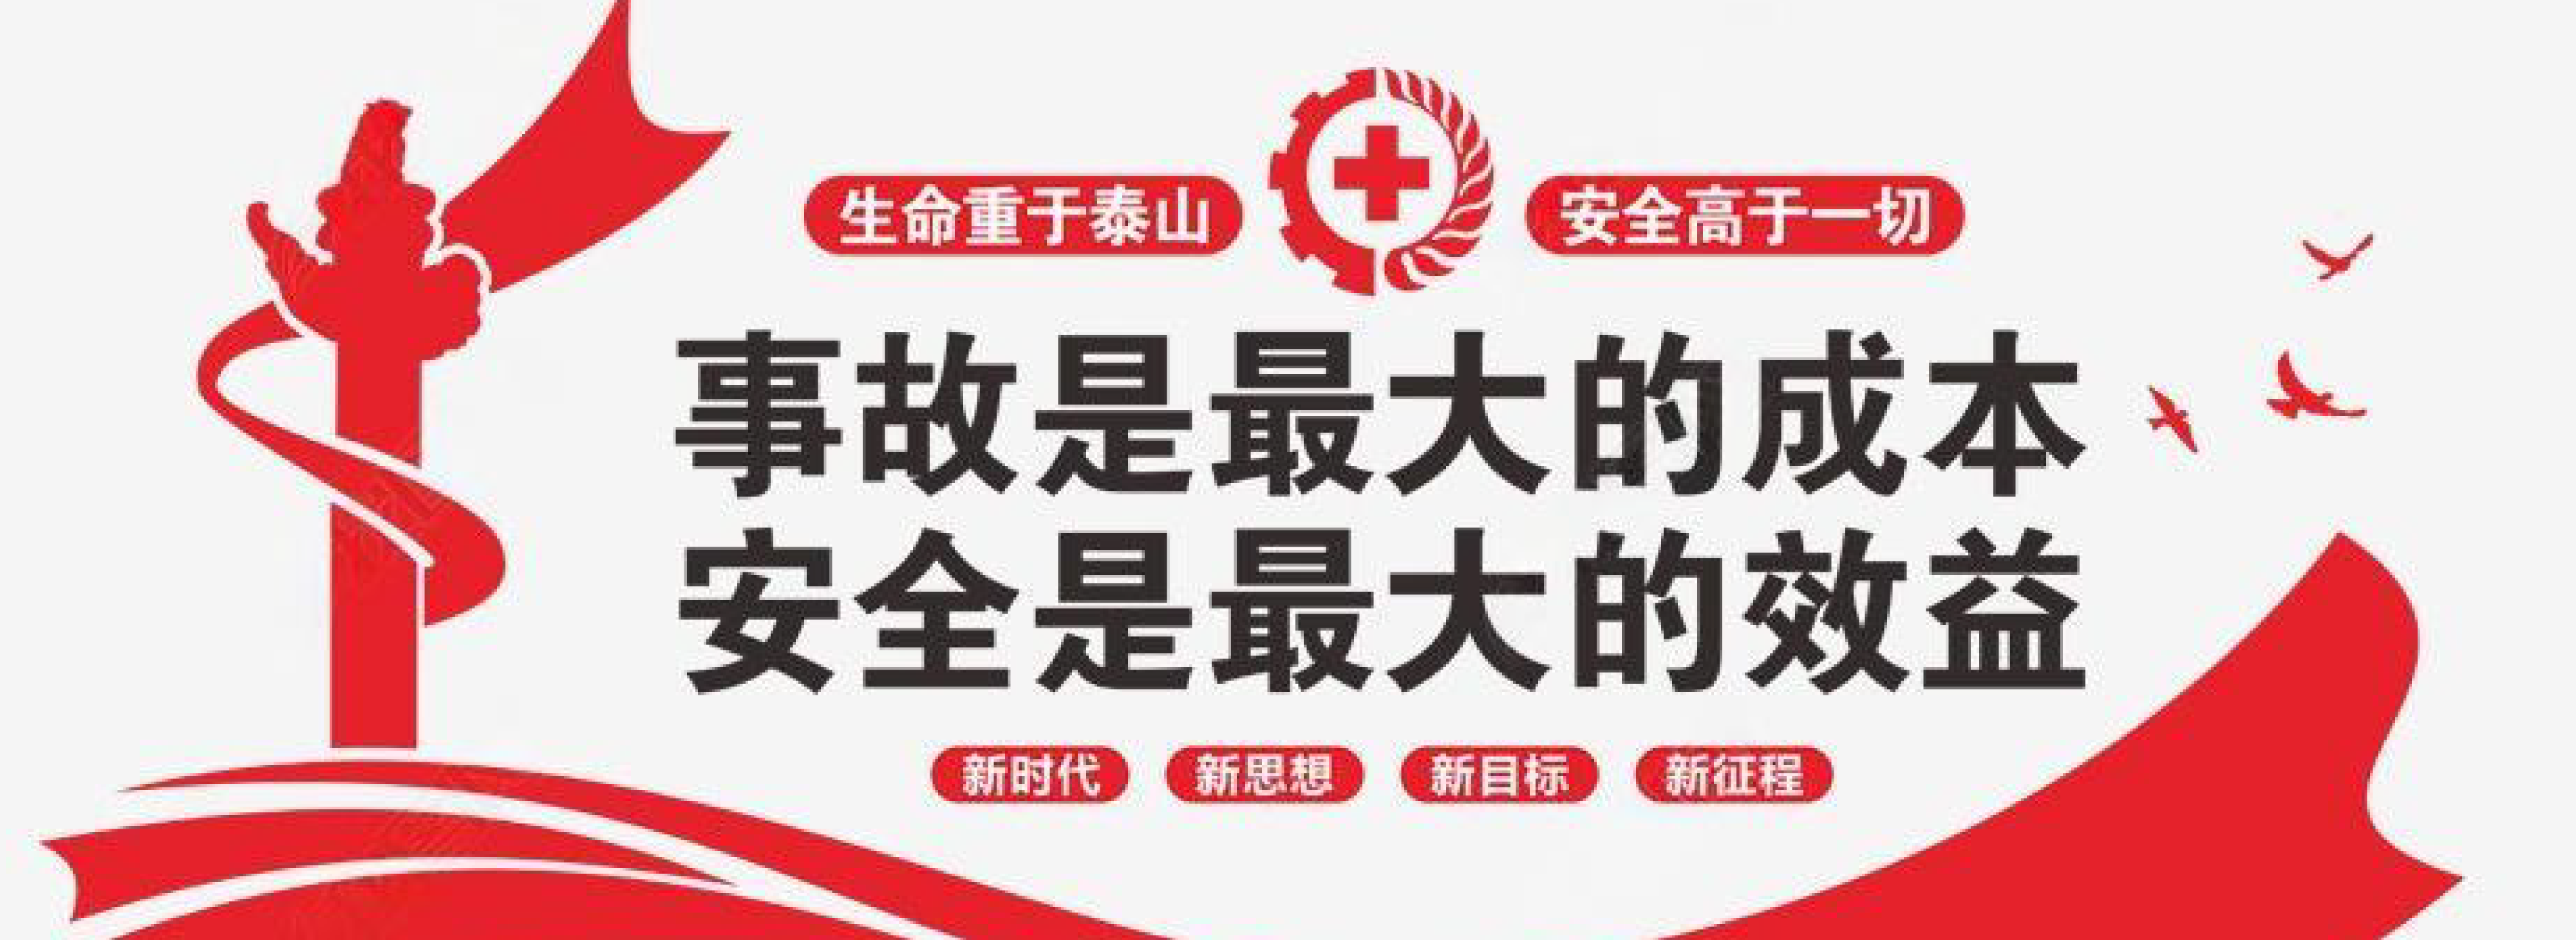 北京市应急管理局有关安全的部分通知/公告